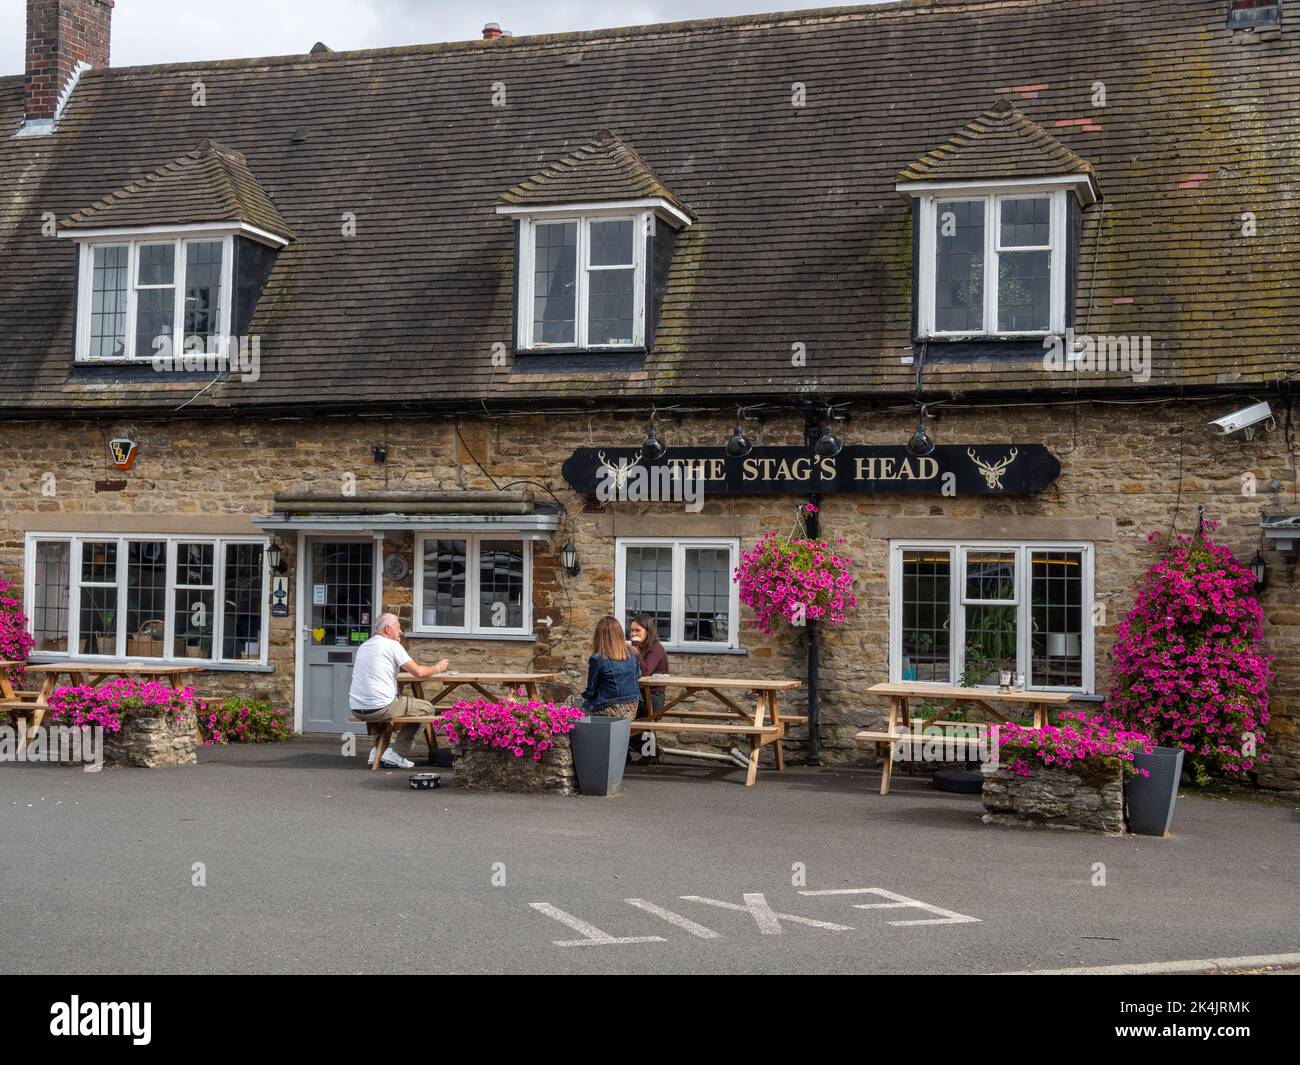 Le pub Stags Head, avec des paniers suspendus colorés, dans le village de Great Doddington, Northamptonshire, Royaume-Uni Banque D'Images